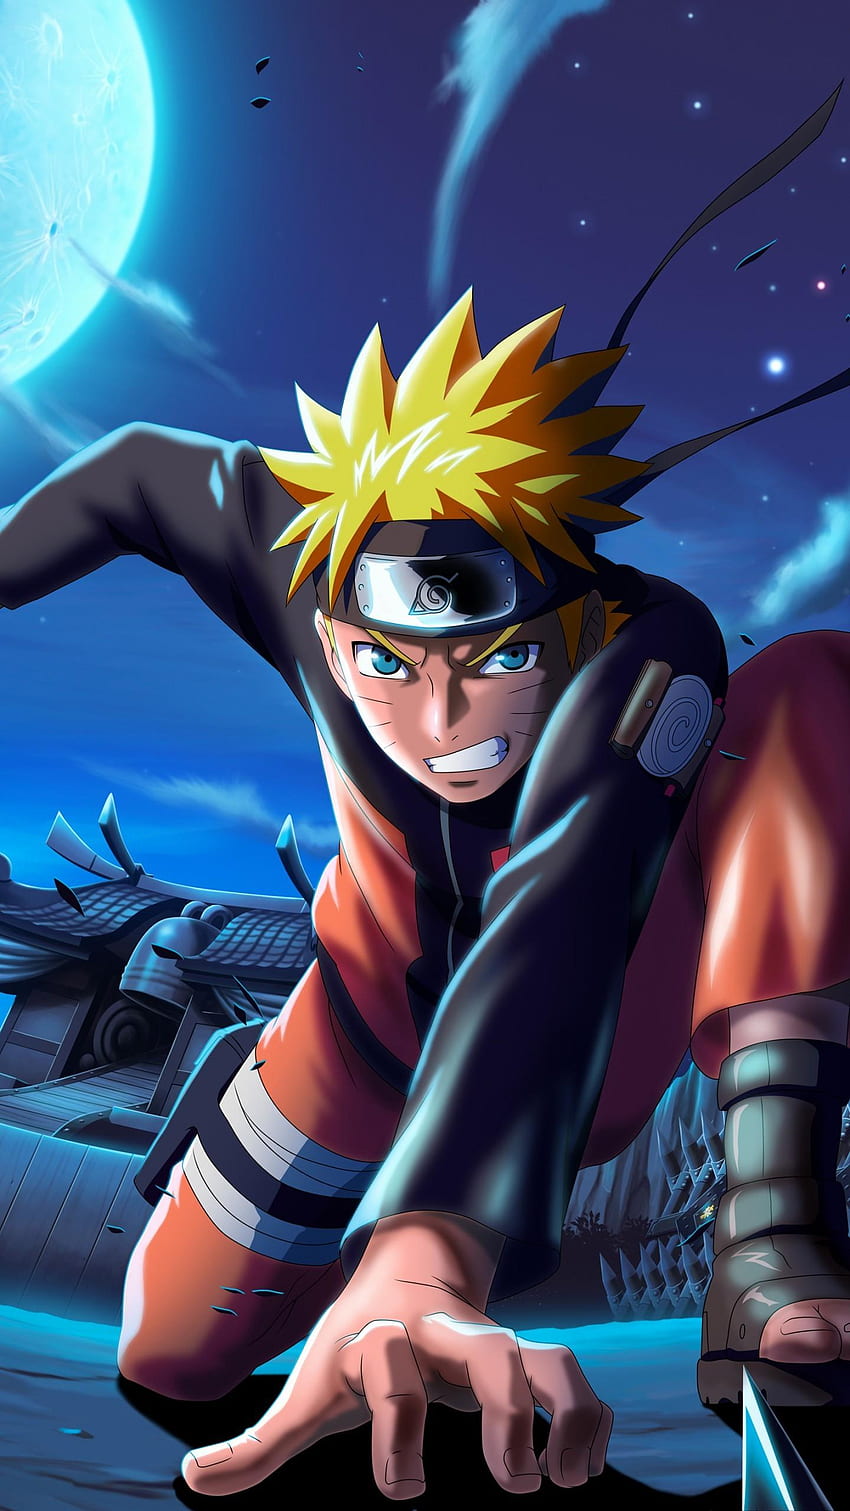 Naruto Uzumaki phone wallpaper sẽ khiến những fan của bộ truyện tranh Naruto vô cùng phấn khích. Bức hình nền này sẽ mang đến cho bạn cảm giác gần gũi và gợi nhớ về những kỷ niệm đã có với nhân vật Naruto Uzumaki. Hãy xem hình ảnh liên quan để lựa chọn cho mình một bức hình nền Naruto Uzumaki phù hợp nhất nhé!